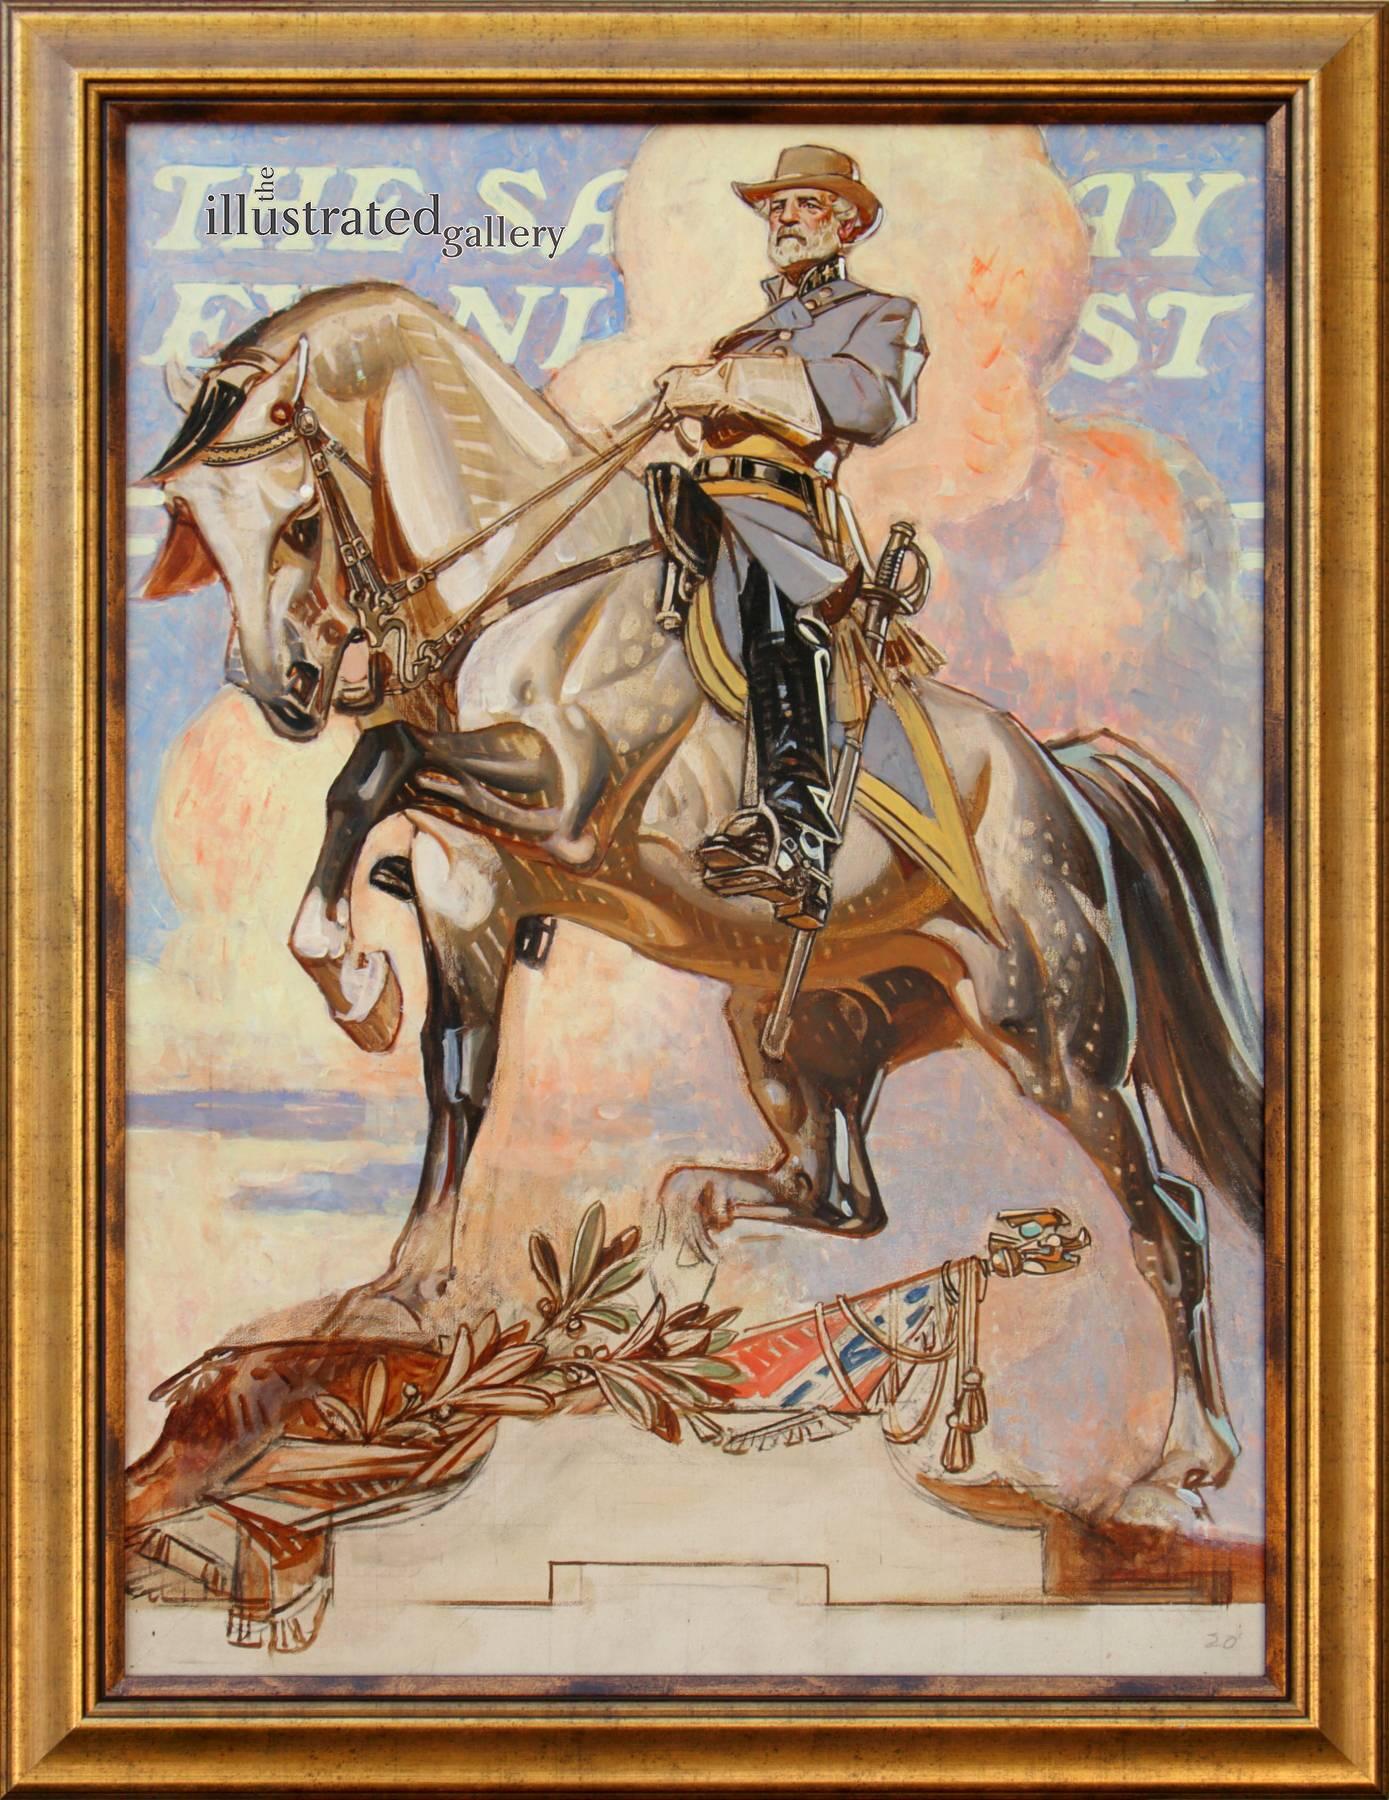 Robert E. Lee on Traveler - Painting by Joseph Christian Leyendecker